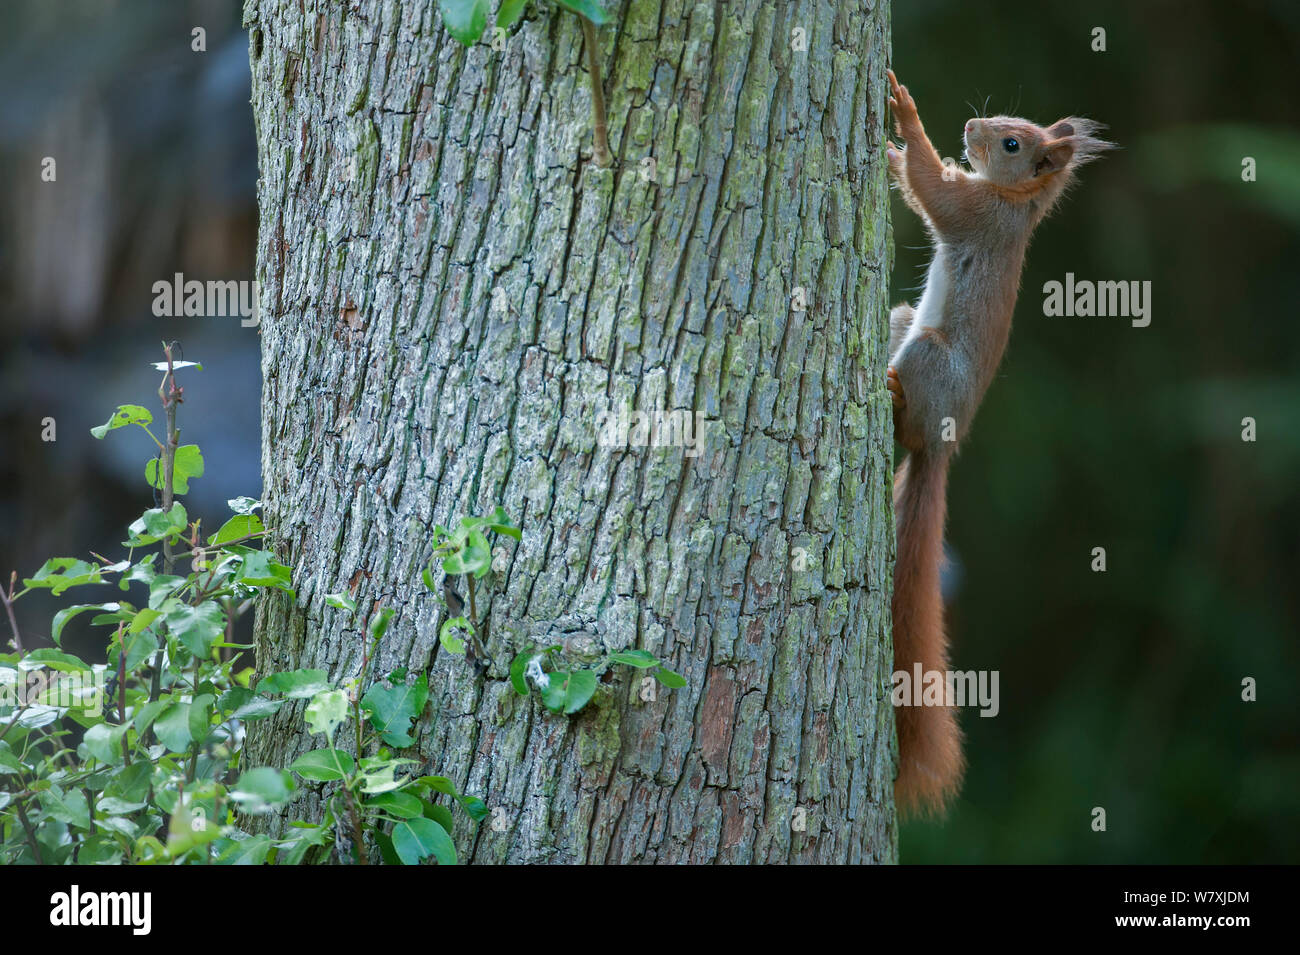 Red scoiattolo (Sciurus vulgaris) sul tronco di albero, Brasschaat, Belgio, maggio. Foto Stock